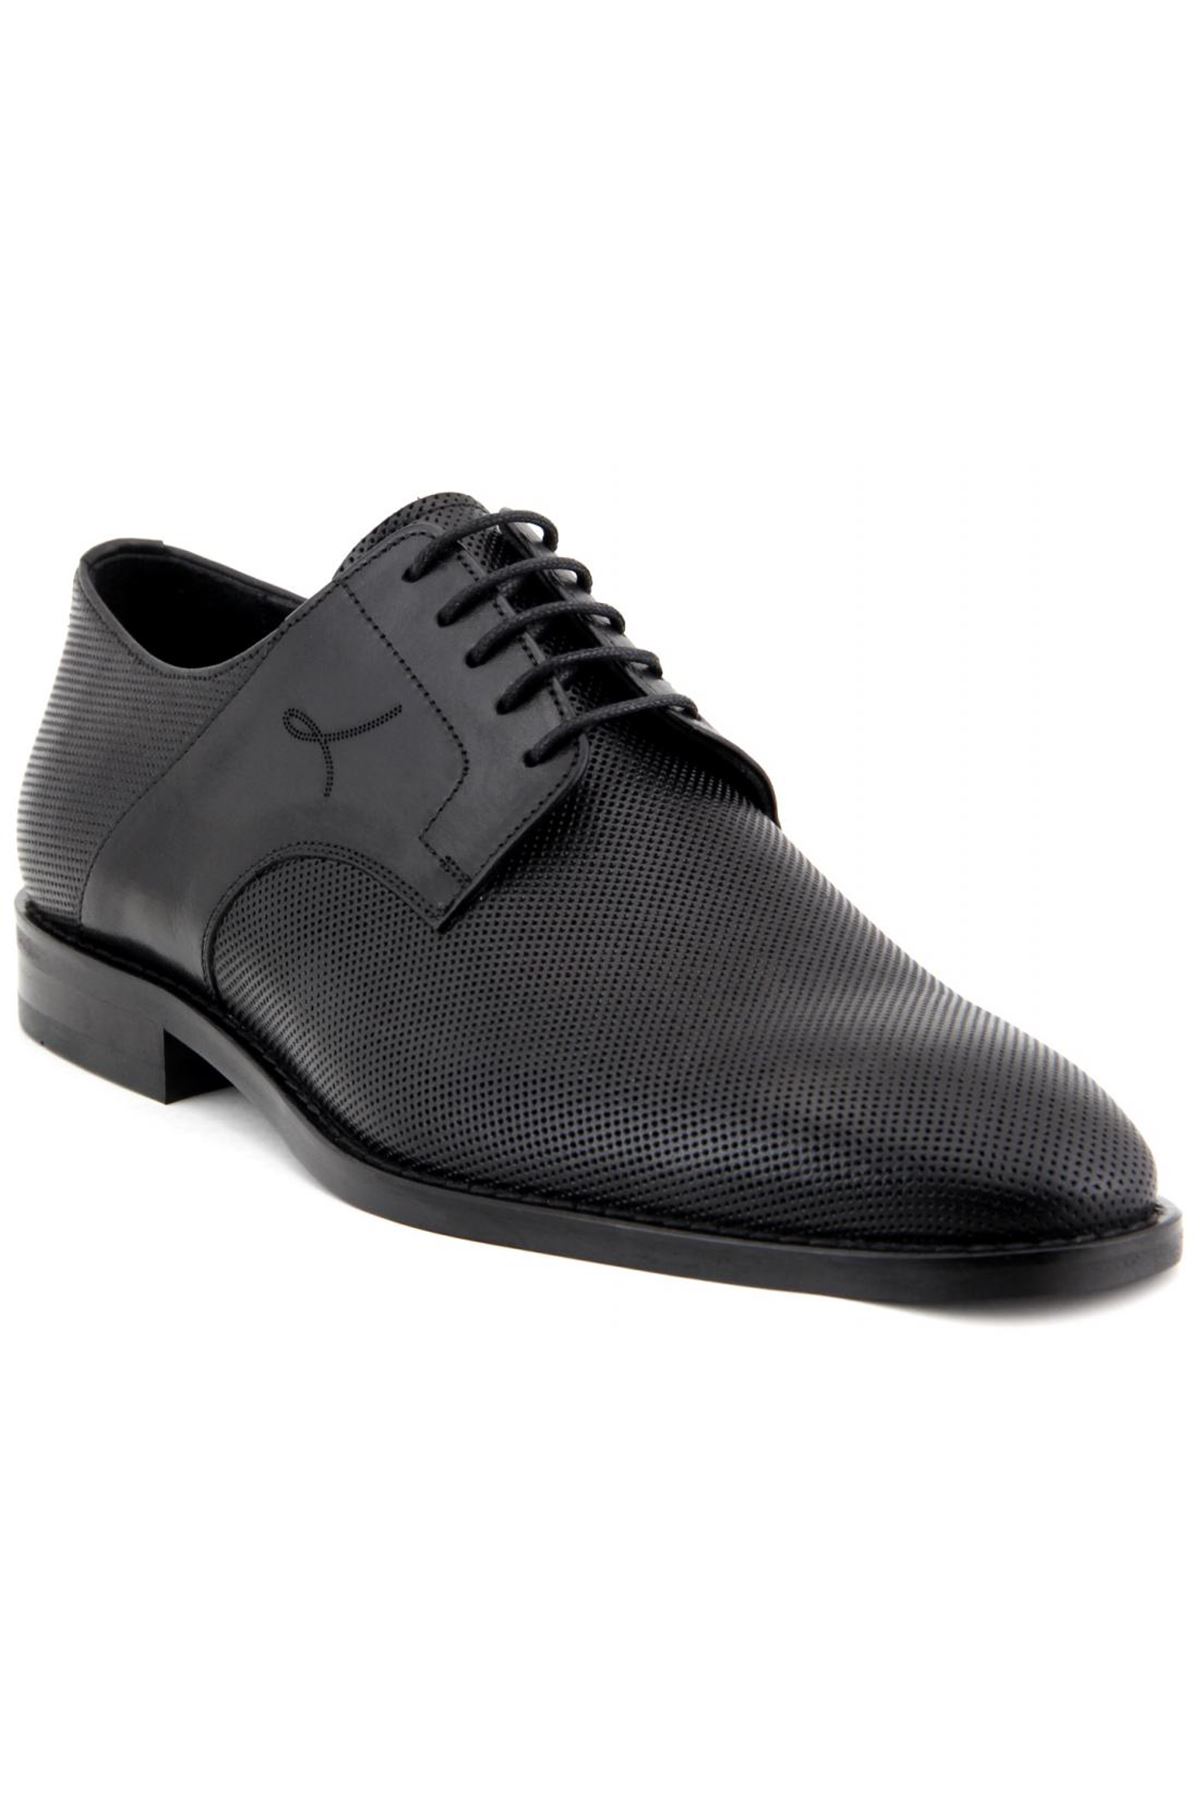 2887 Libero Klasik Erkek Ayakkabı - Siyah